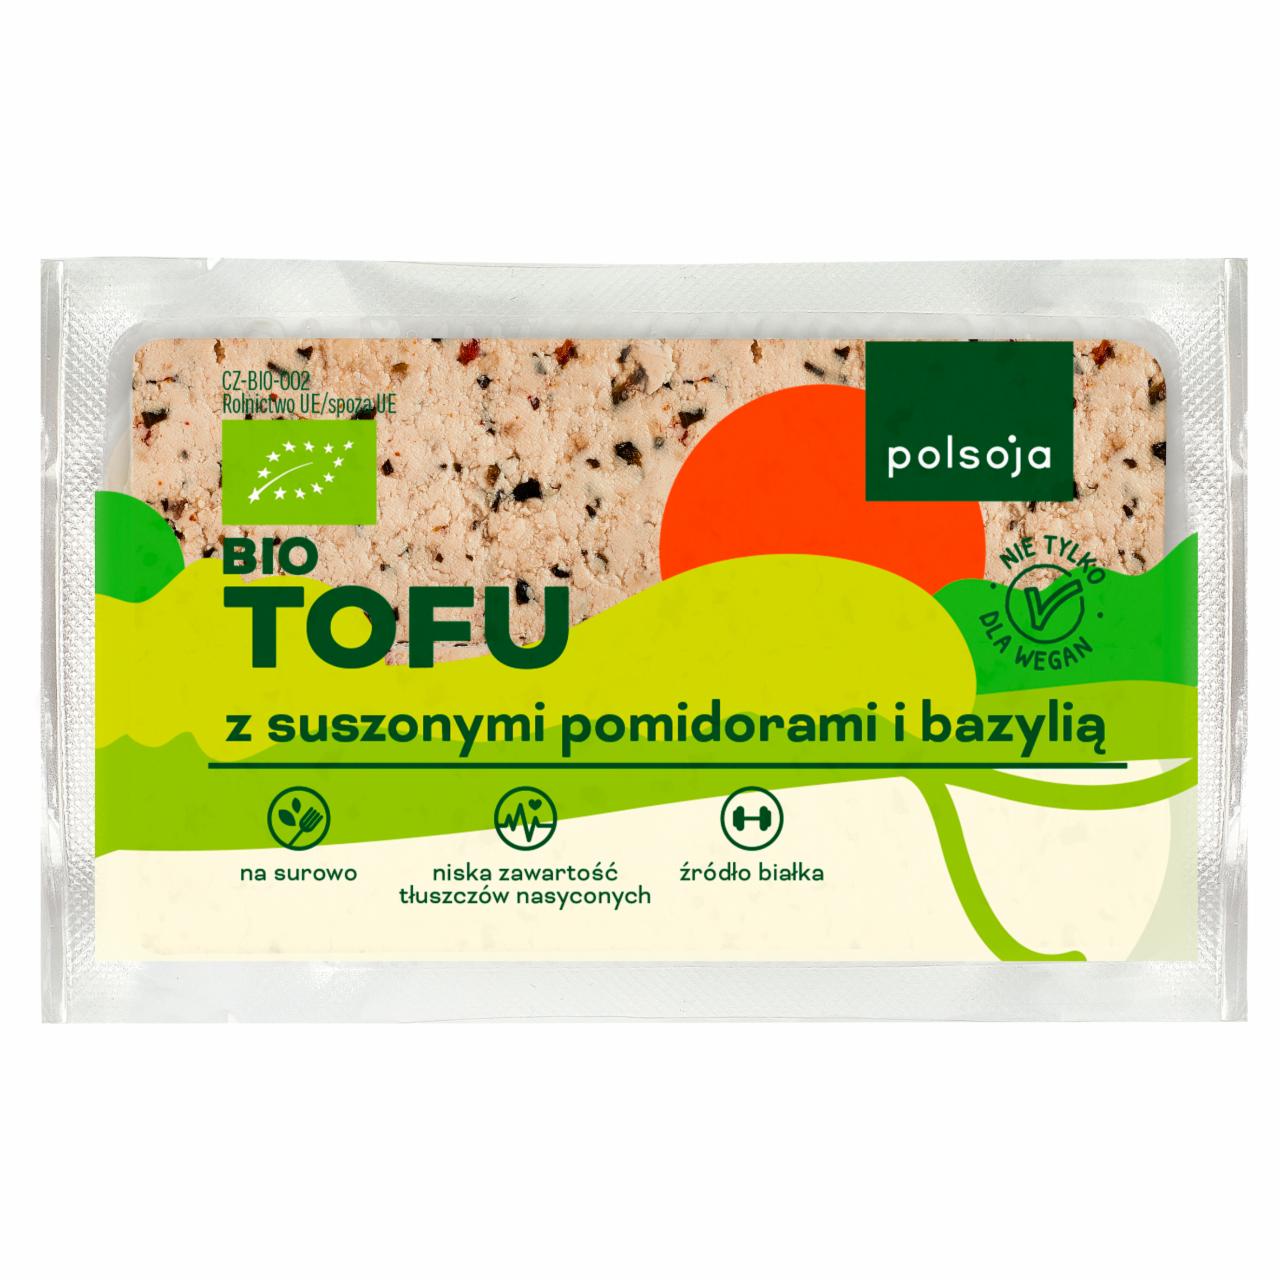 Zdjęcia - Polsoja Bio tofu z suszonymi pomidorami i bazylią 200 g